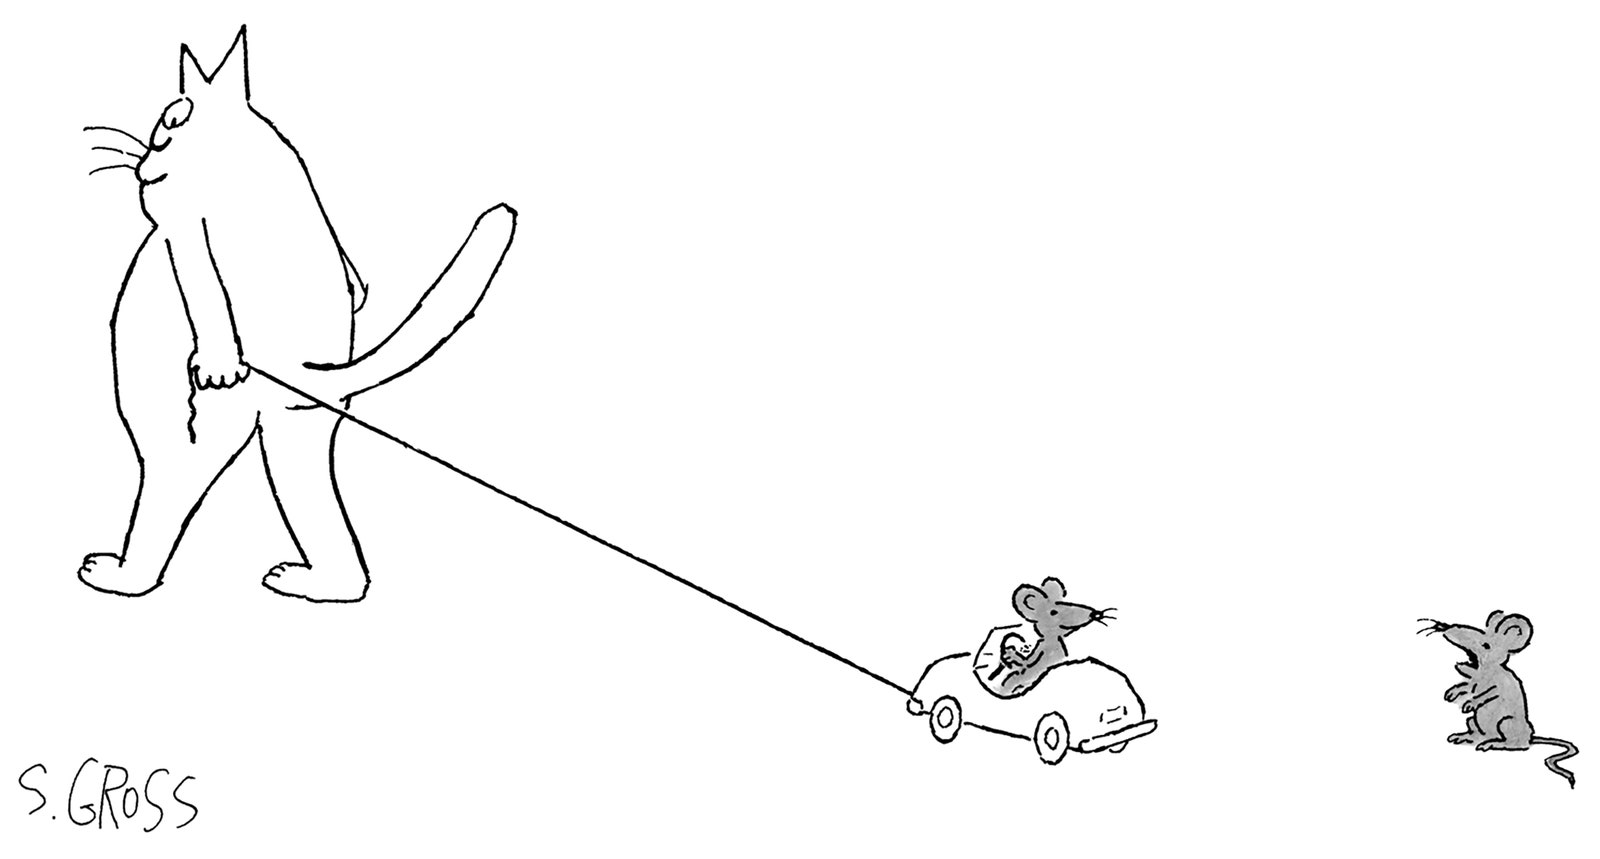 Eine Maus zur anderen, die in einem Miniaturauto sitzt, das von einer Katze gezogen wird.